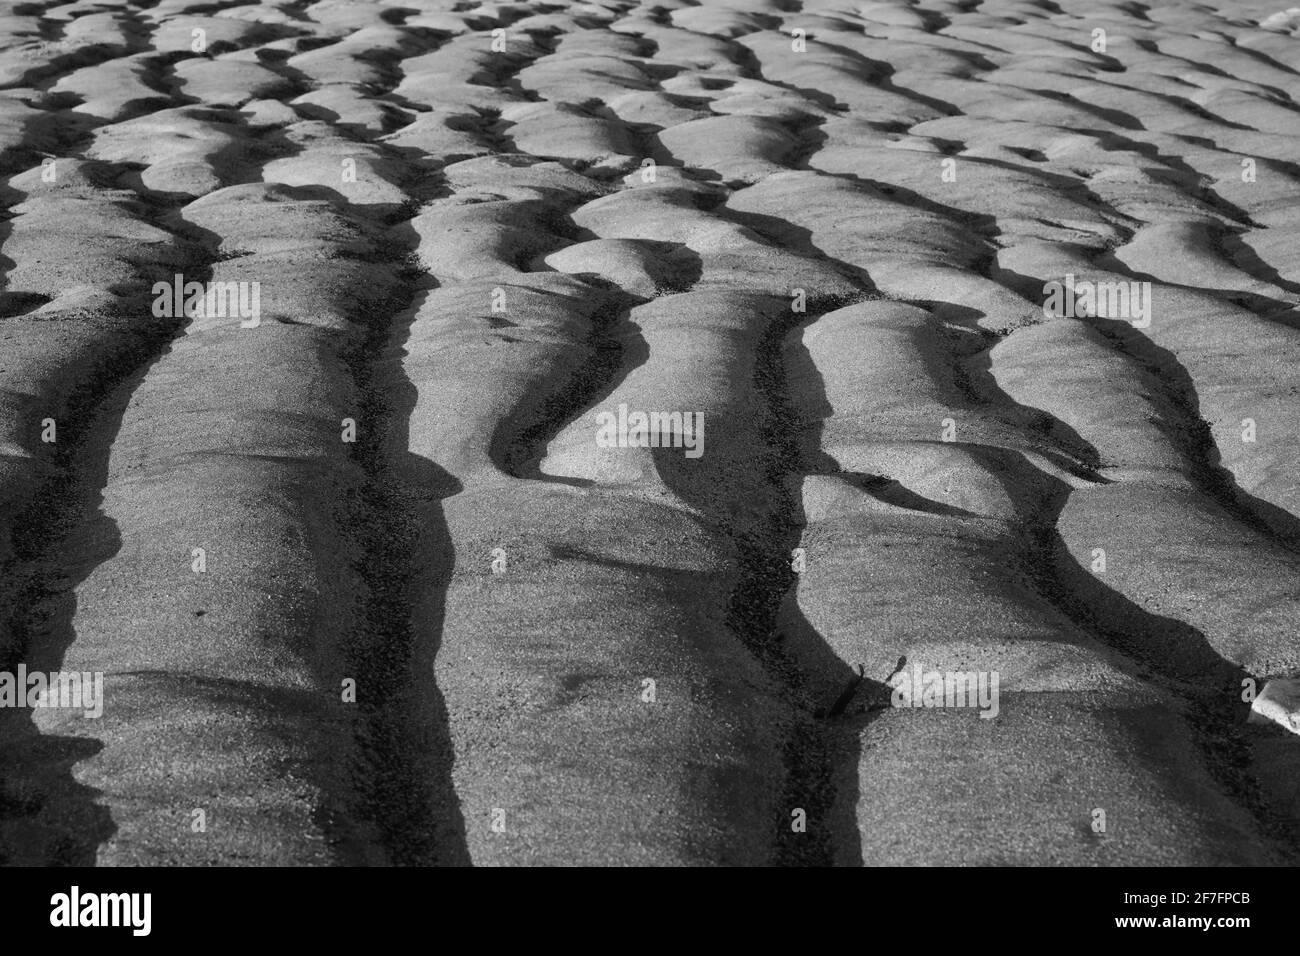 Increspature nella sabbia causate dalla marea in fase di recedimento. Foto Stock